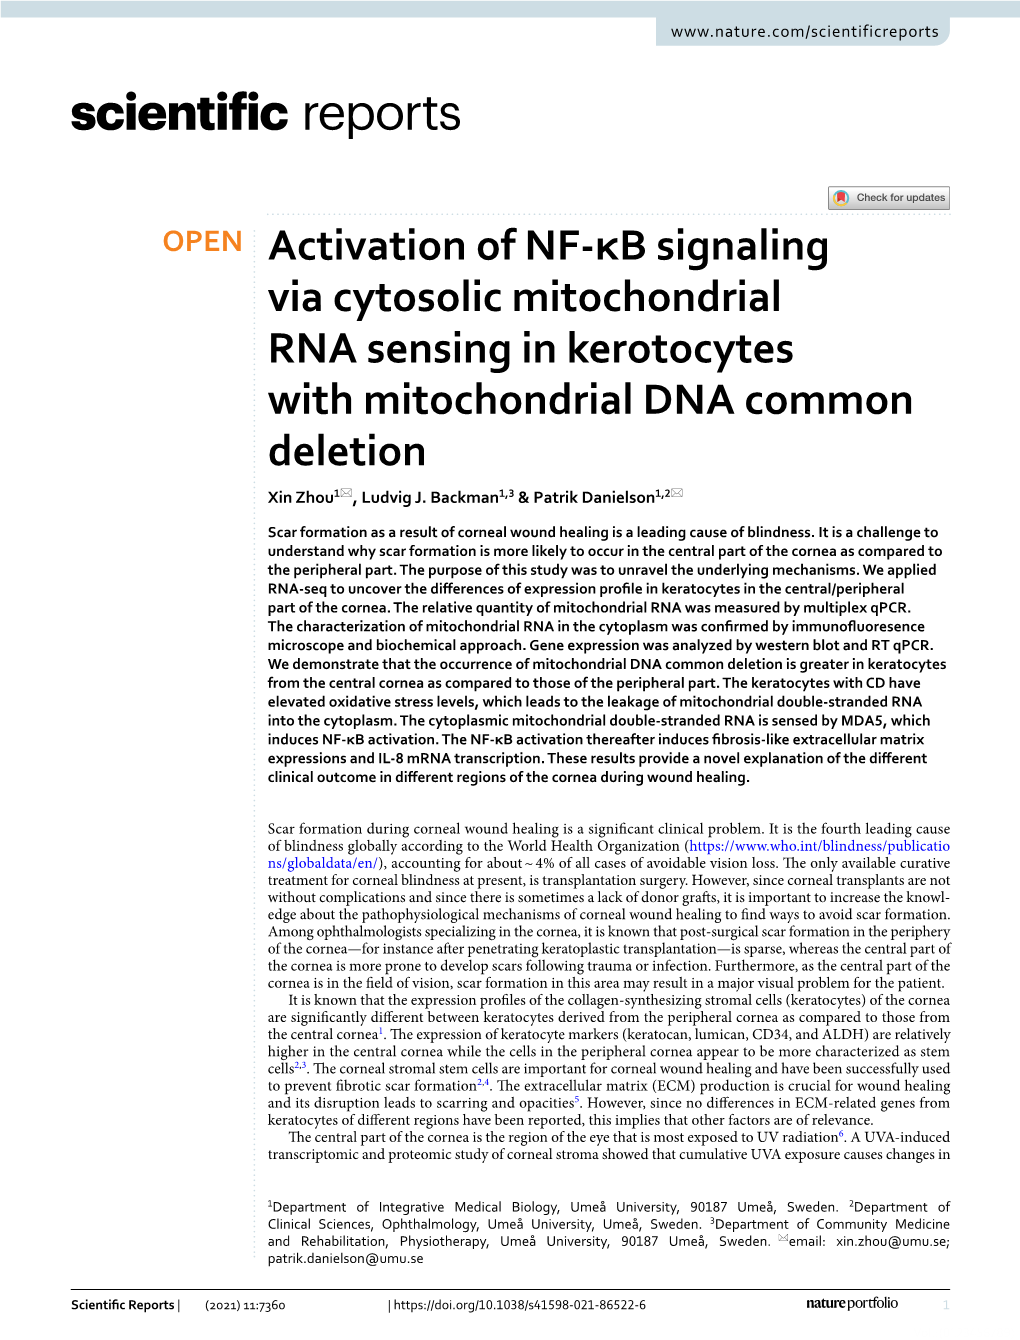 Activation of NF-Κb Signaling Via Cytosolic Mitochondrial RNA